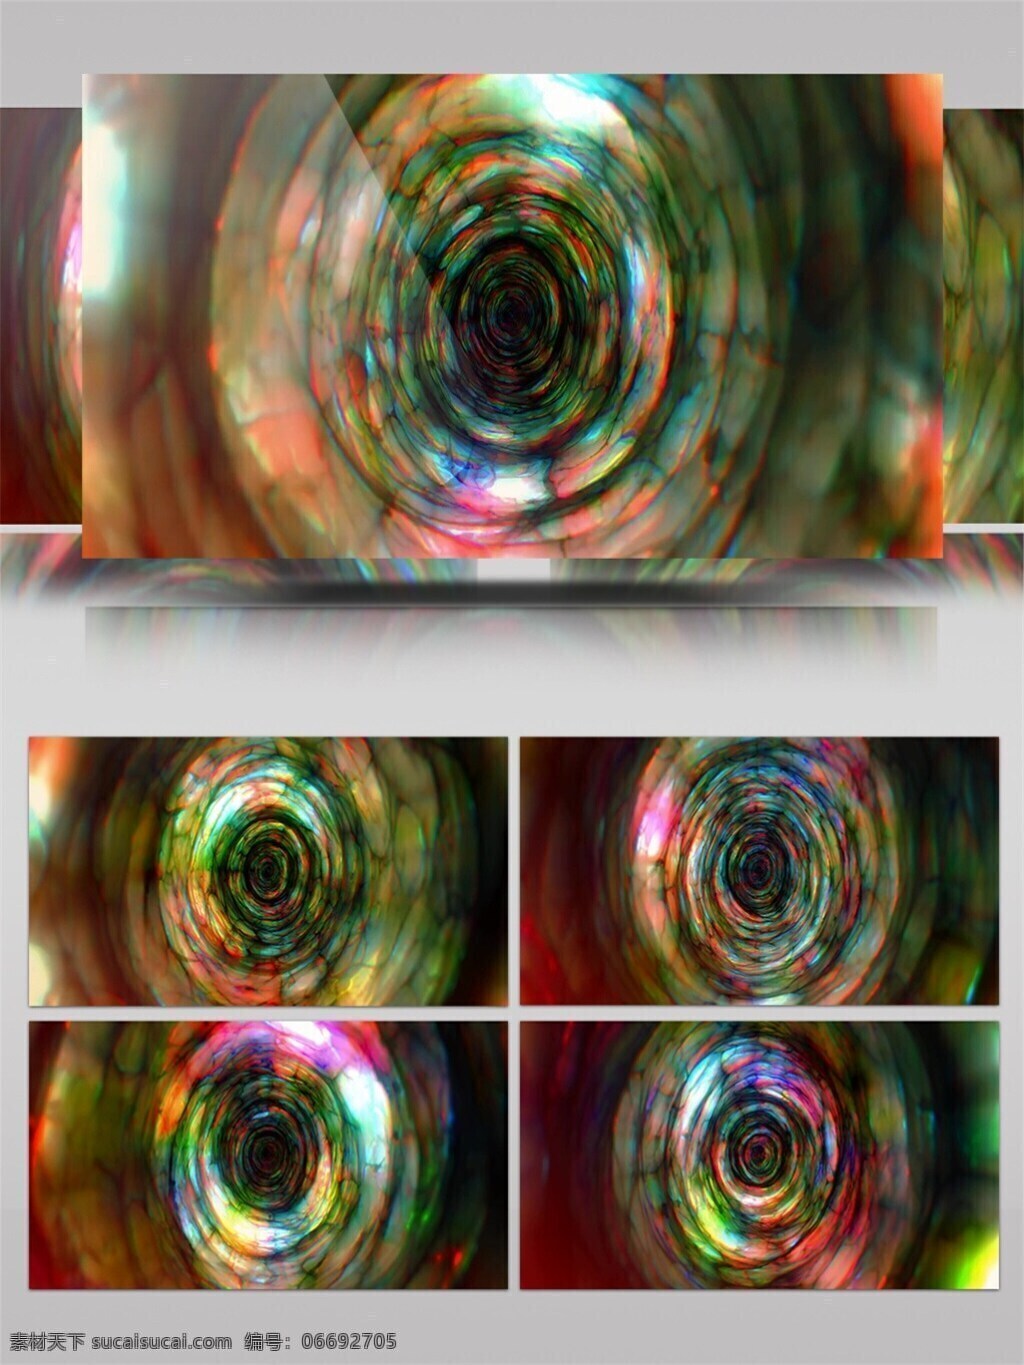 探索 人眼 结构 科技 视频 炫彩 流动 螺旋 深邃 通道 视频素材 动态视频素材